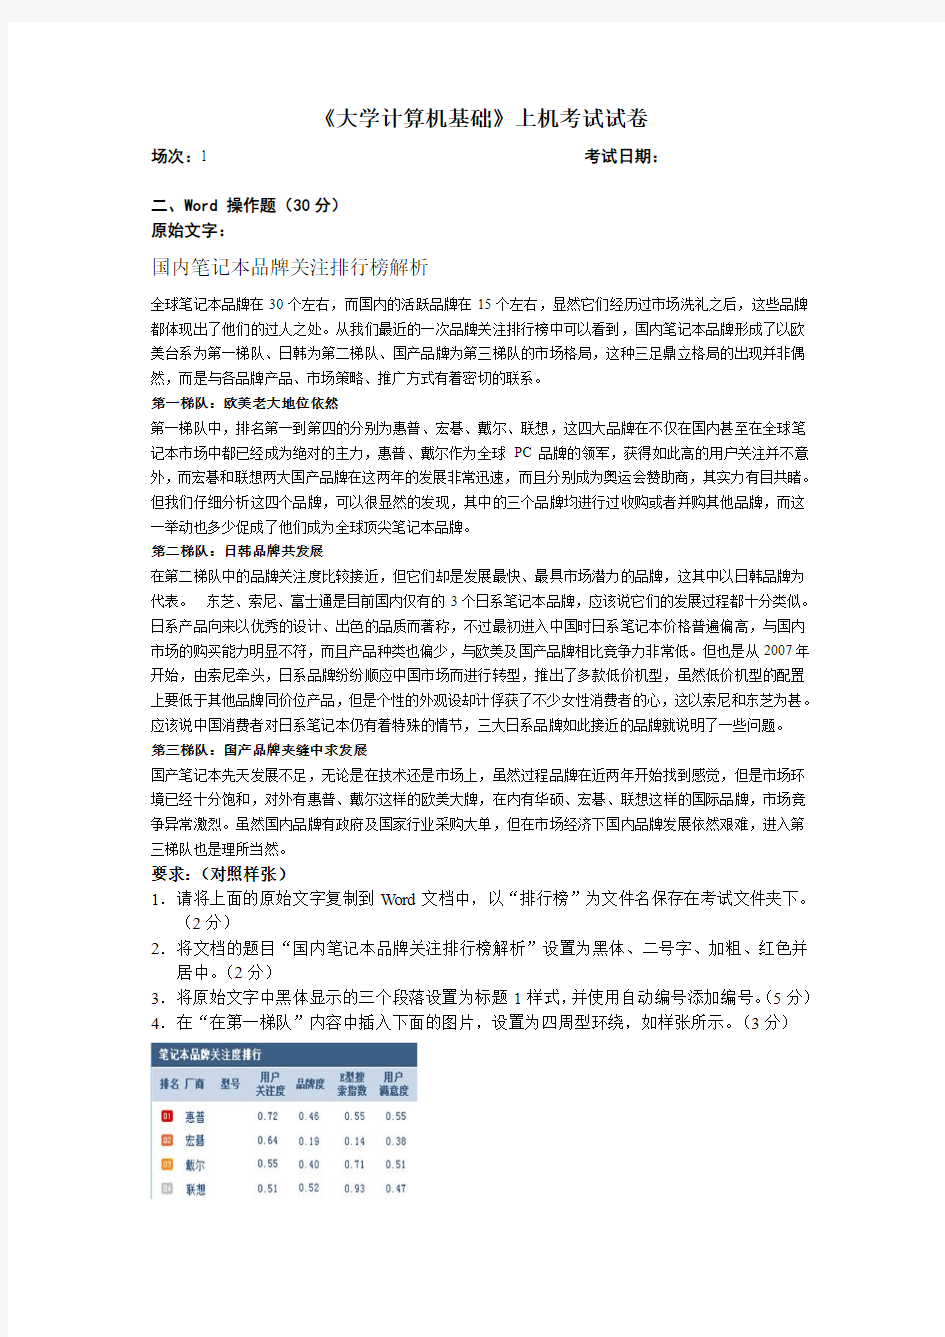 中国海洋大学大学计算机基础上机考试题目